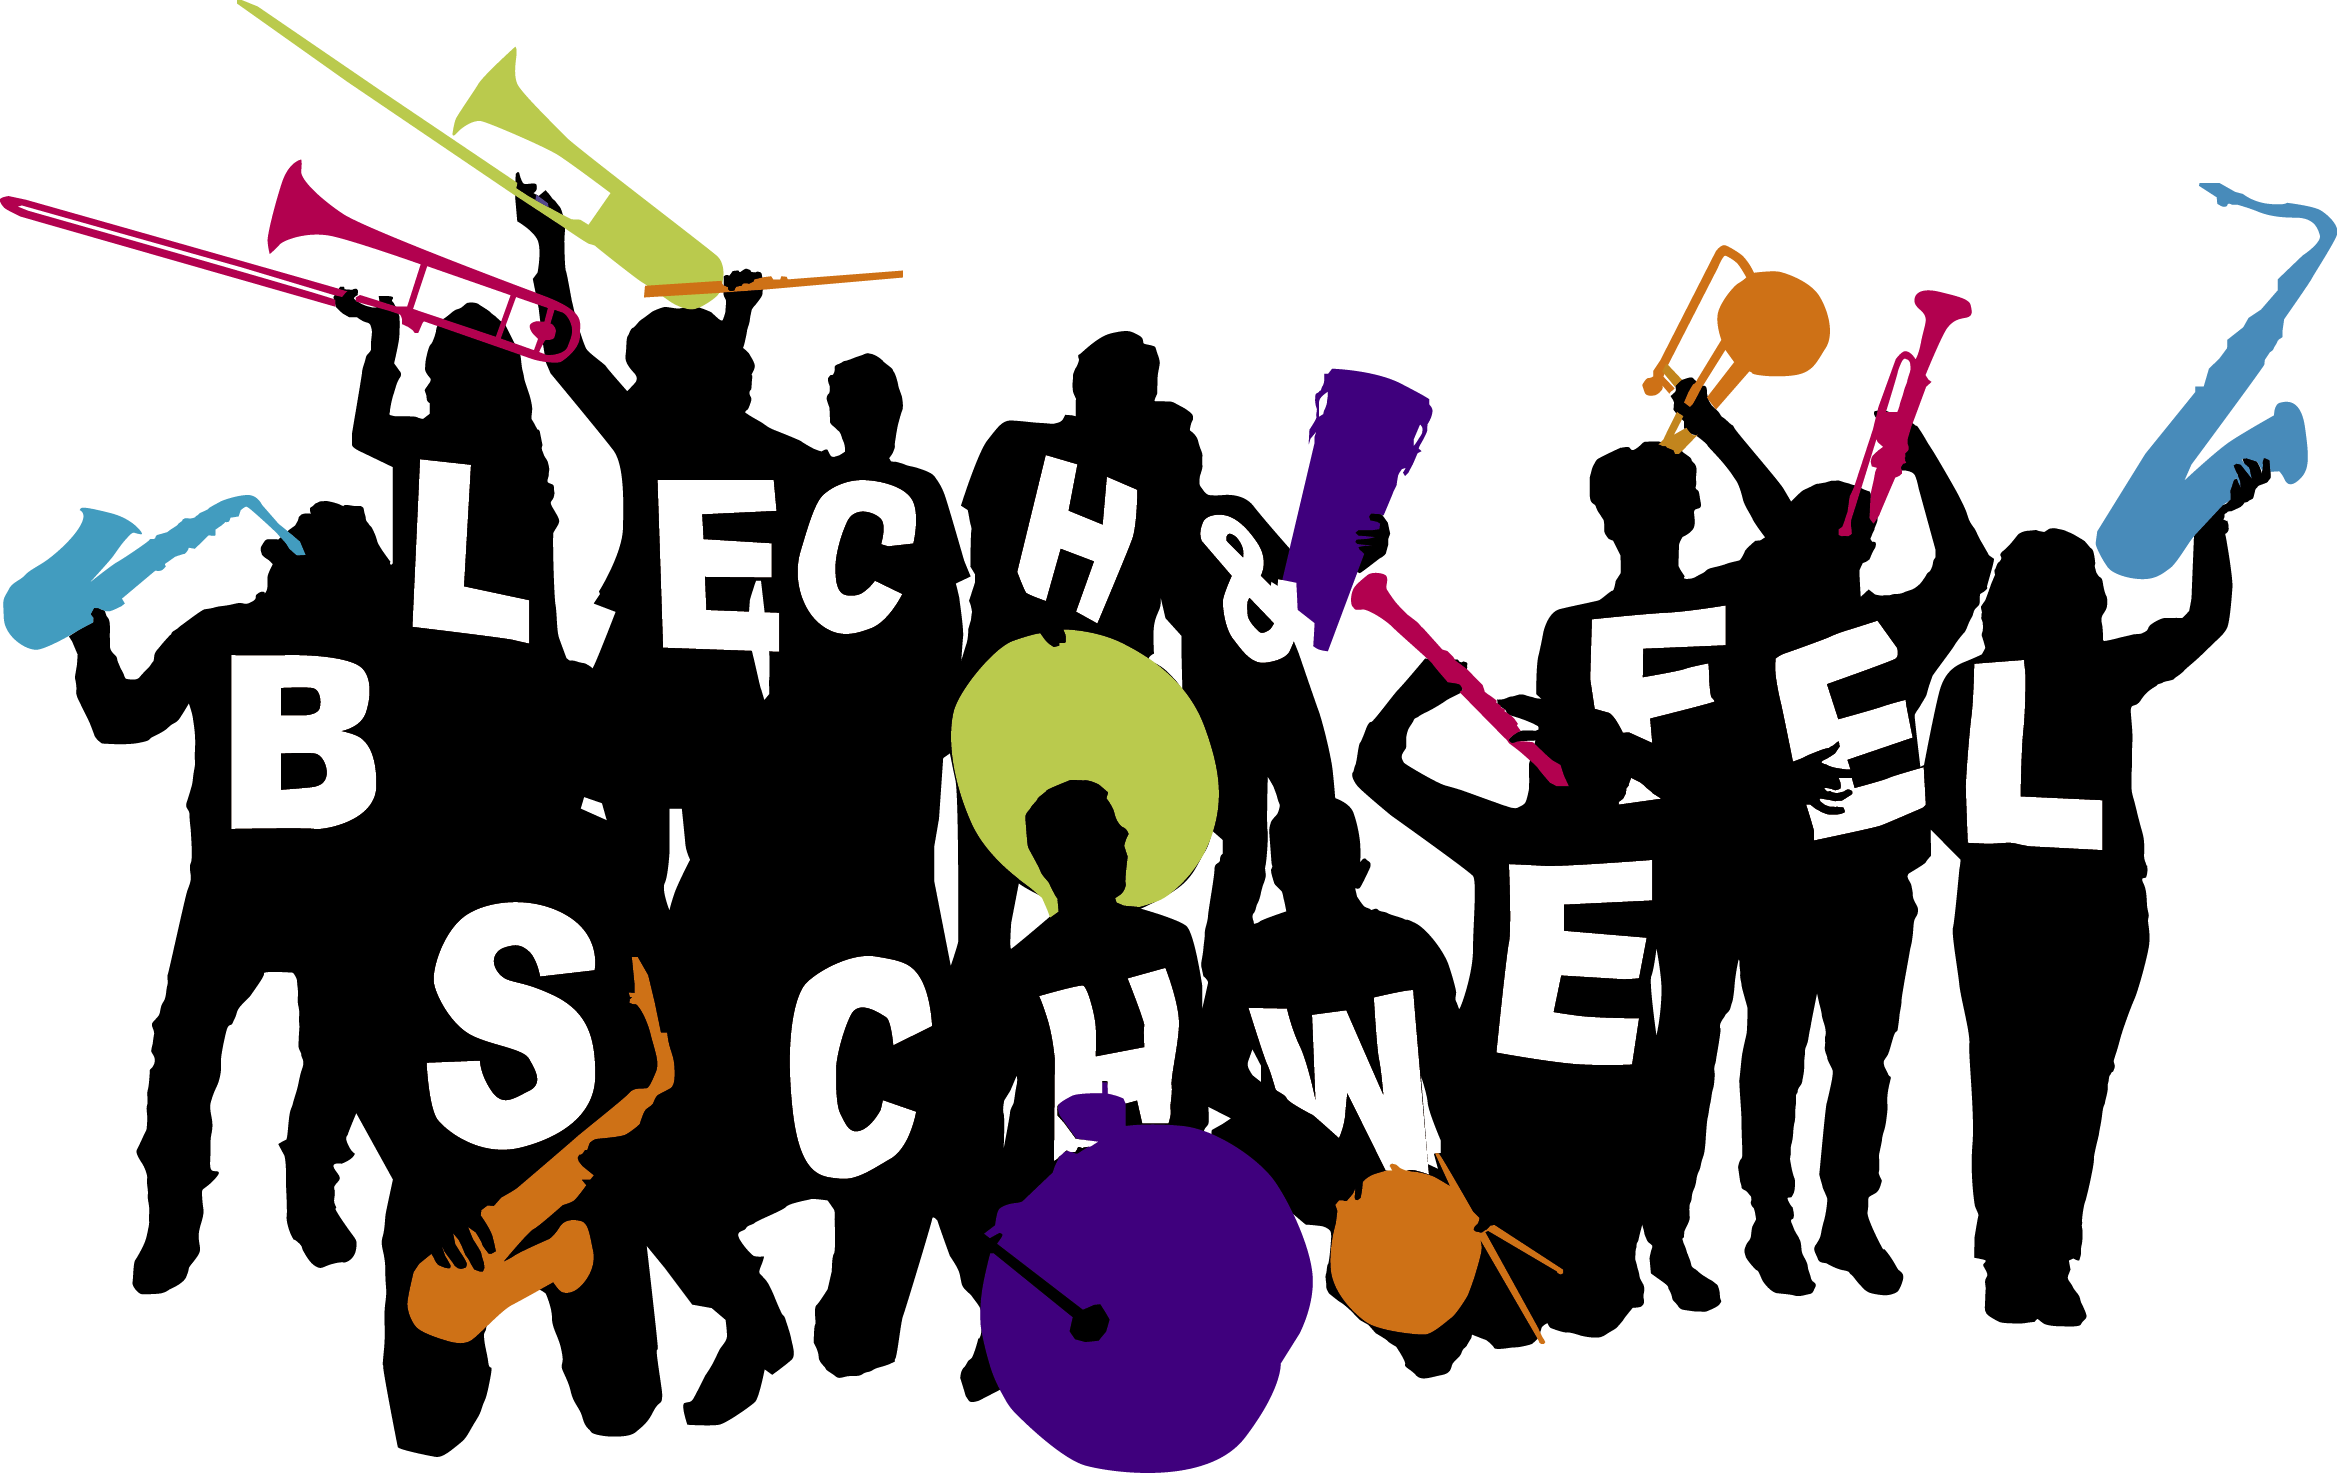  Blech & Schwefel - Kassel